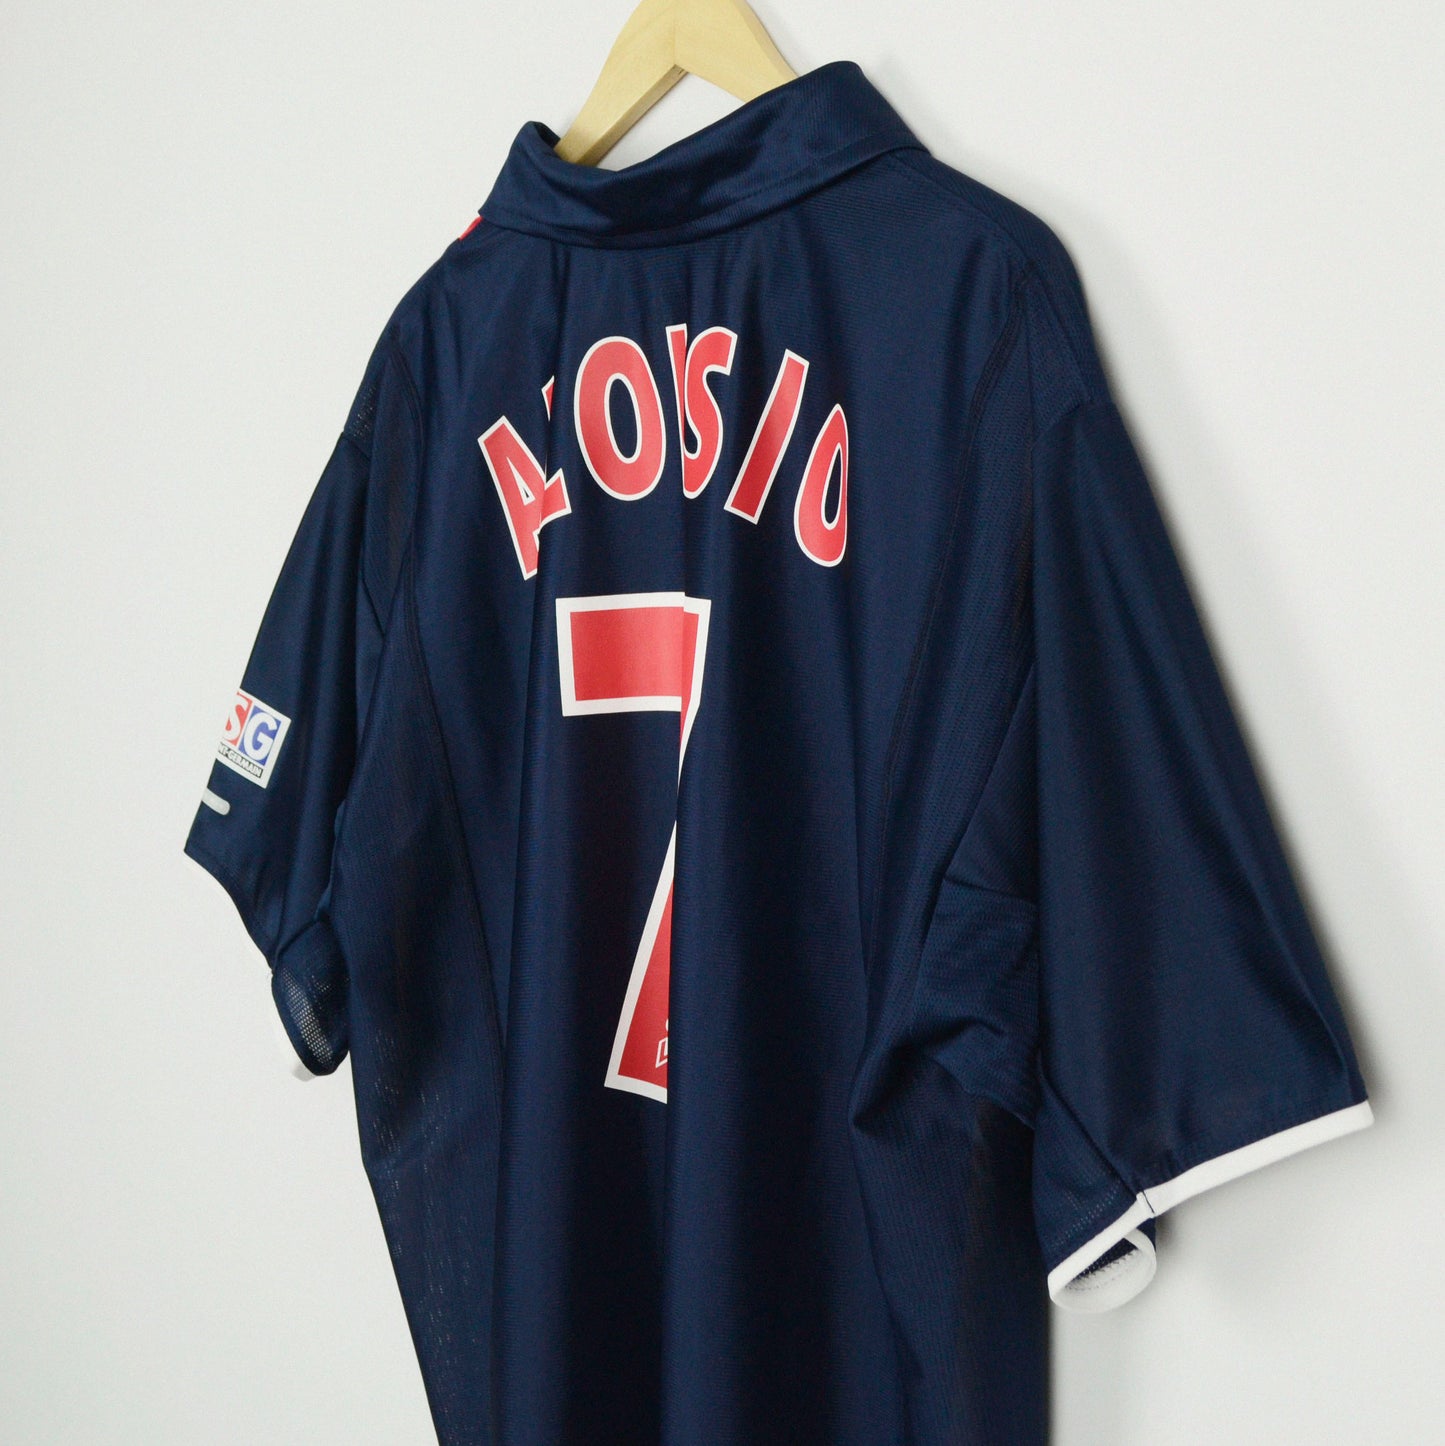 2001-02 Nike Paris Saint-Germain Home Shirt 'Aloisio 7' XL